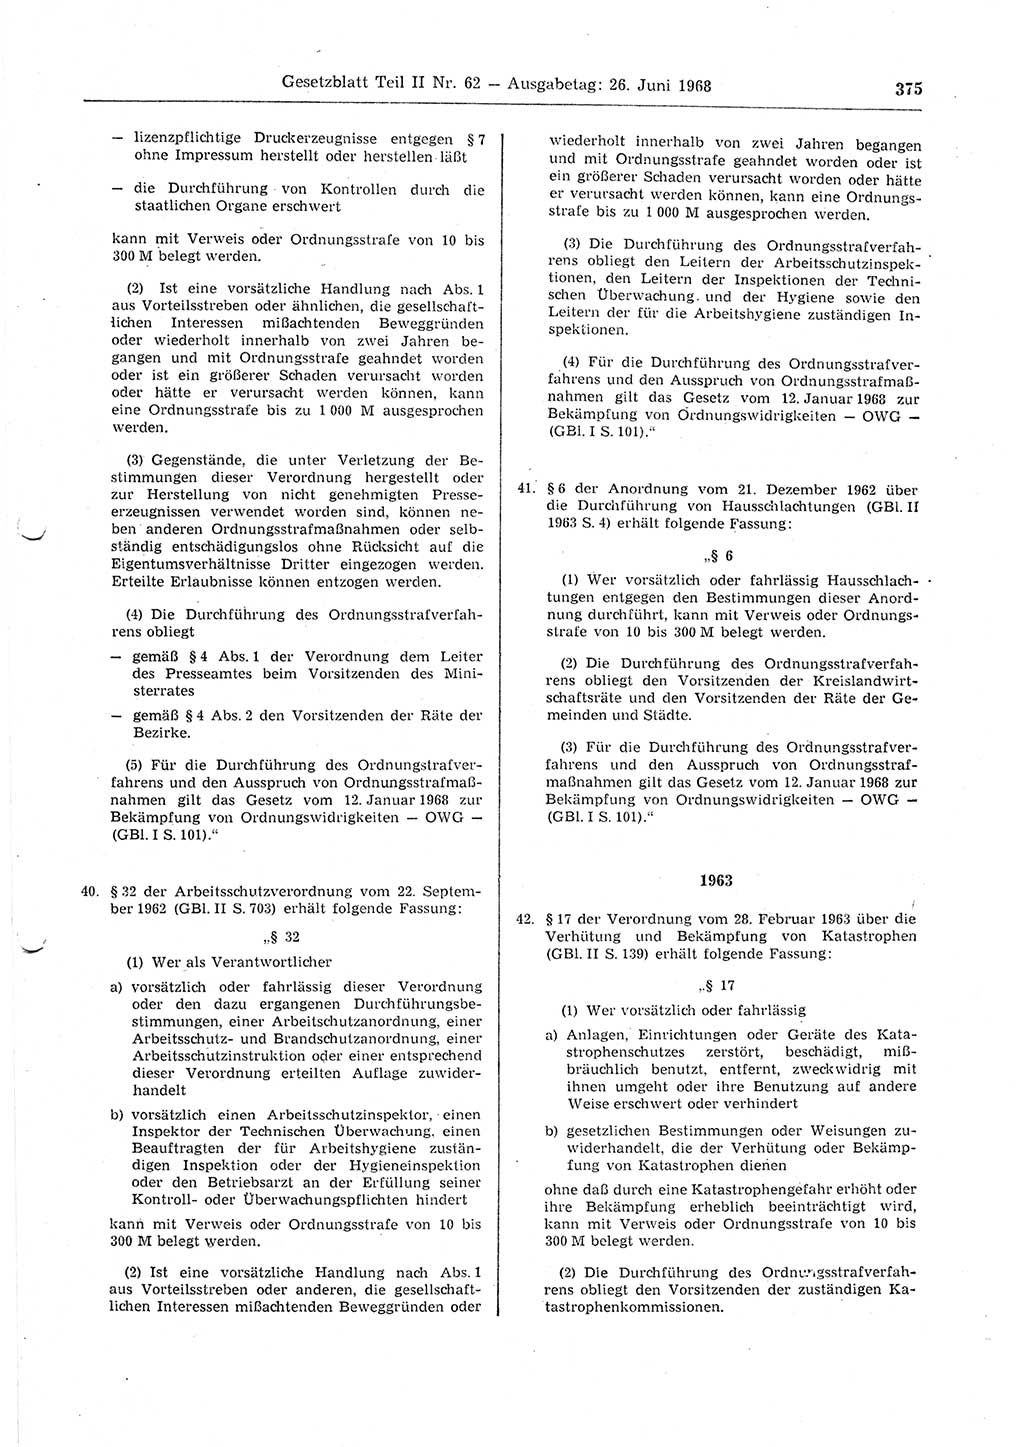 Gesetzblatt (GBl.) der Deutschen Demokratischen Republik (DDR) Teil ⅠⅠ 1968, Seite 375 (GBl. DDR ⅠⅠ 1968, S. 375)